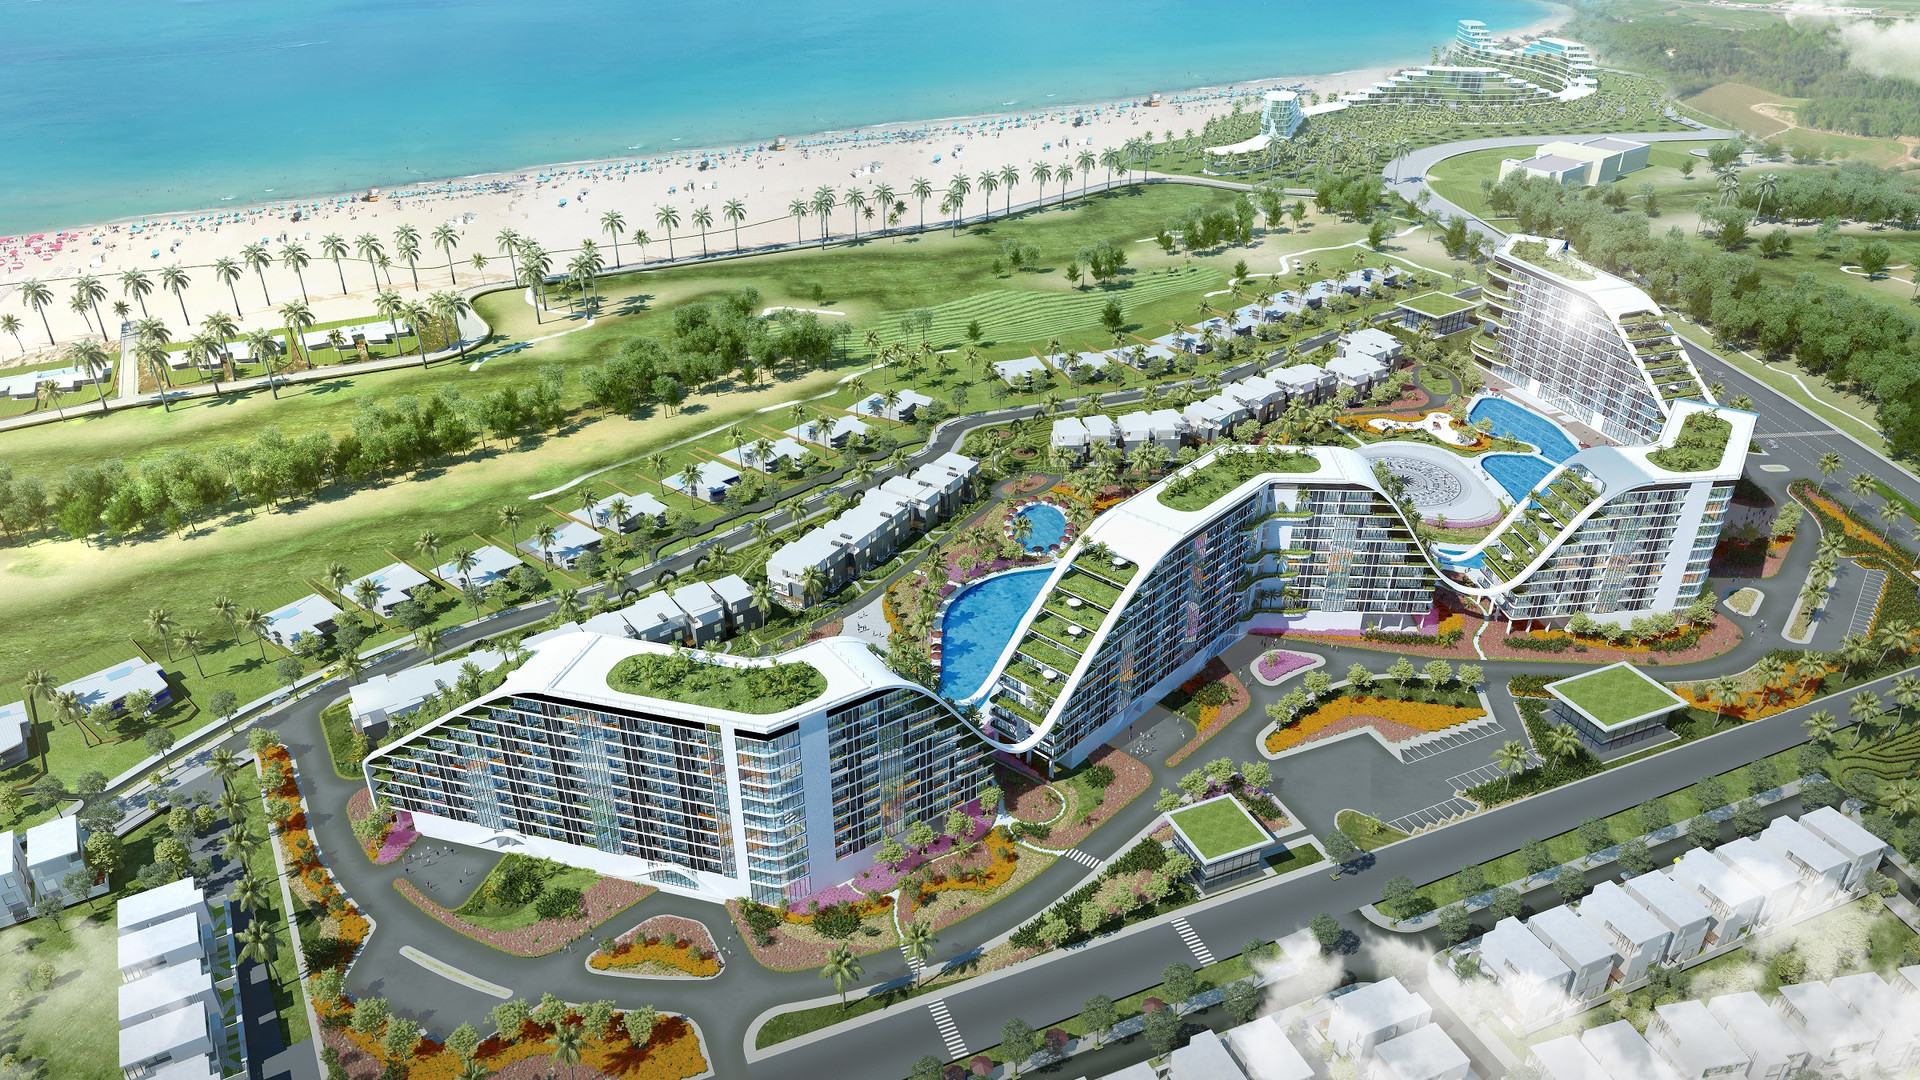 Khách sạn The Coastal Hill được xem là một biểu tượng mới của Quy Nhơn (Phối cảnh 3D)